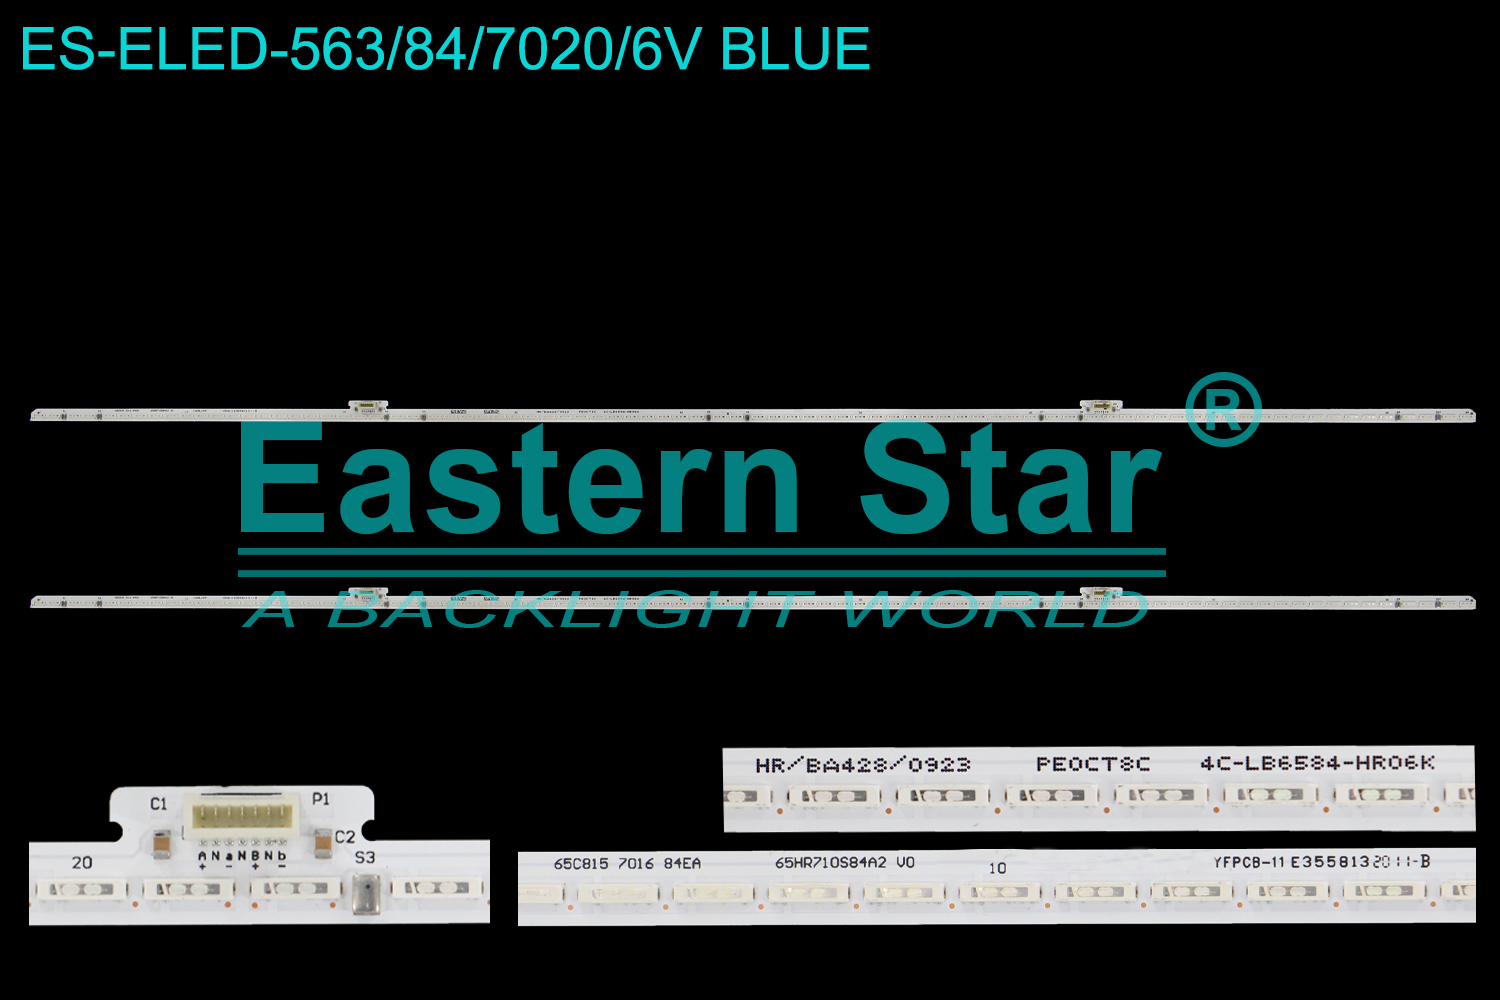 ES-ELED-563 ELED/EDGE TV backlight use for 65'' Tcl 65C815  7016 84EA  65HR710S84A2 V0  4C-LB6584-HR06K LED STRIPS(2)